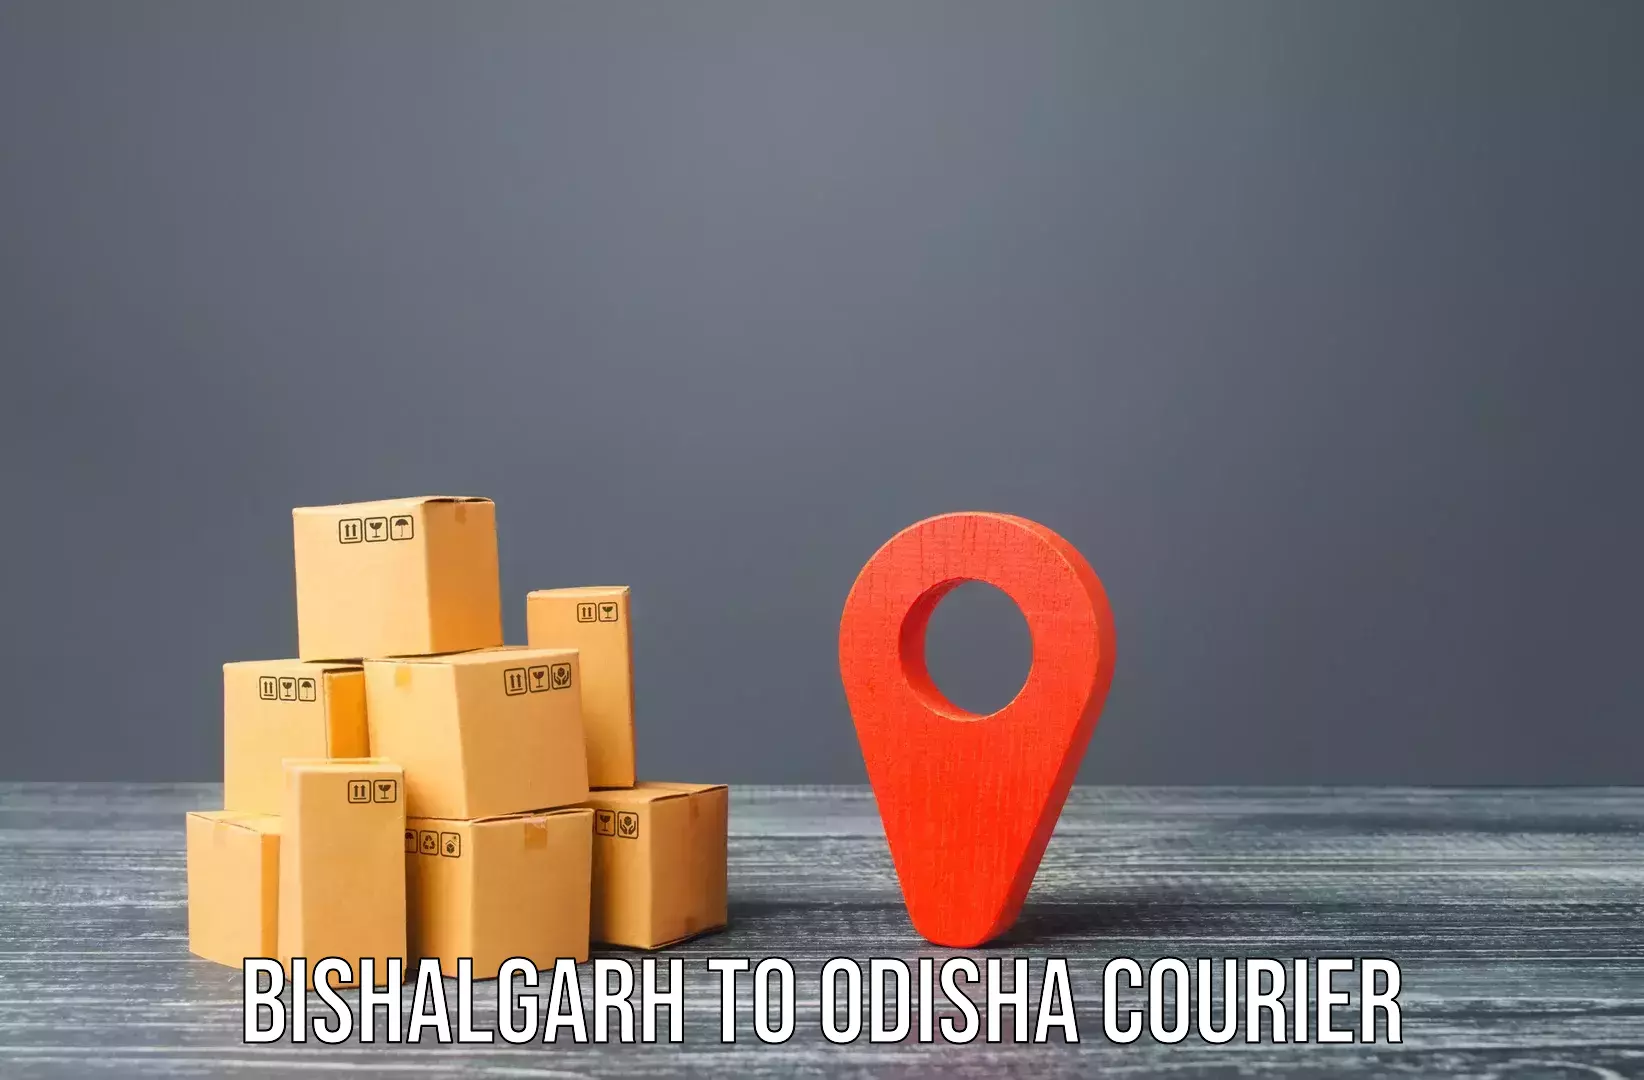 Furniture moving experts Bishalgarh to Asika